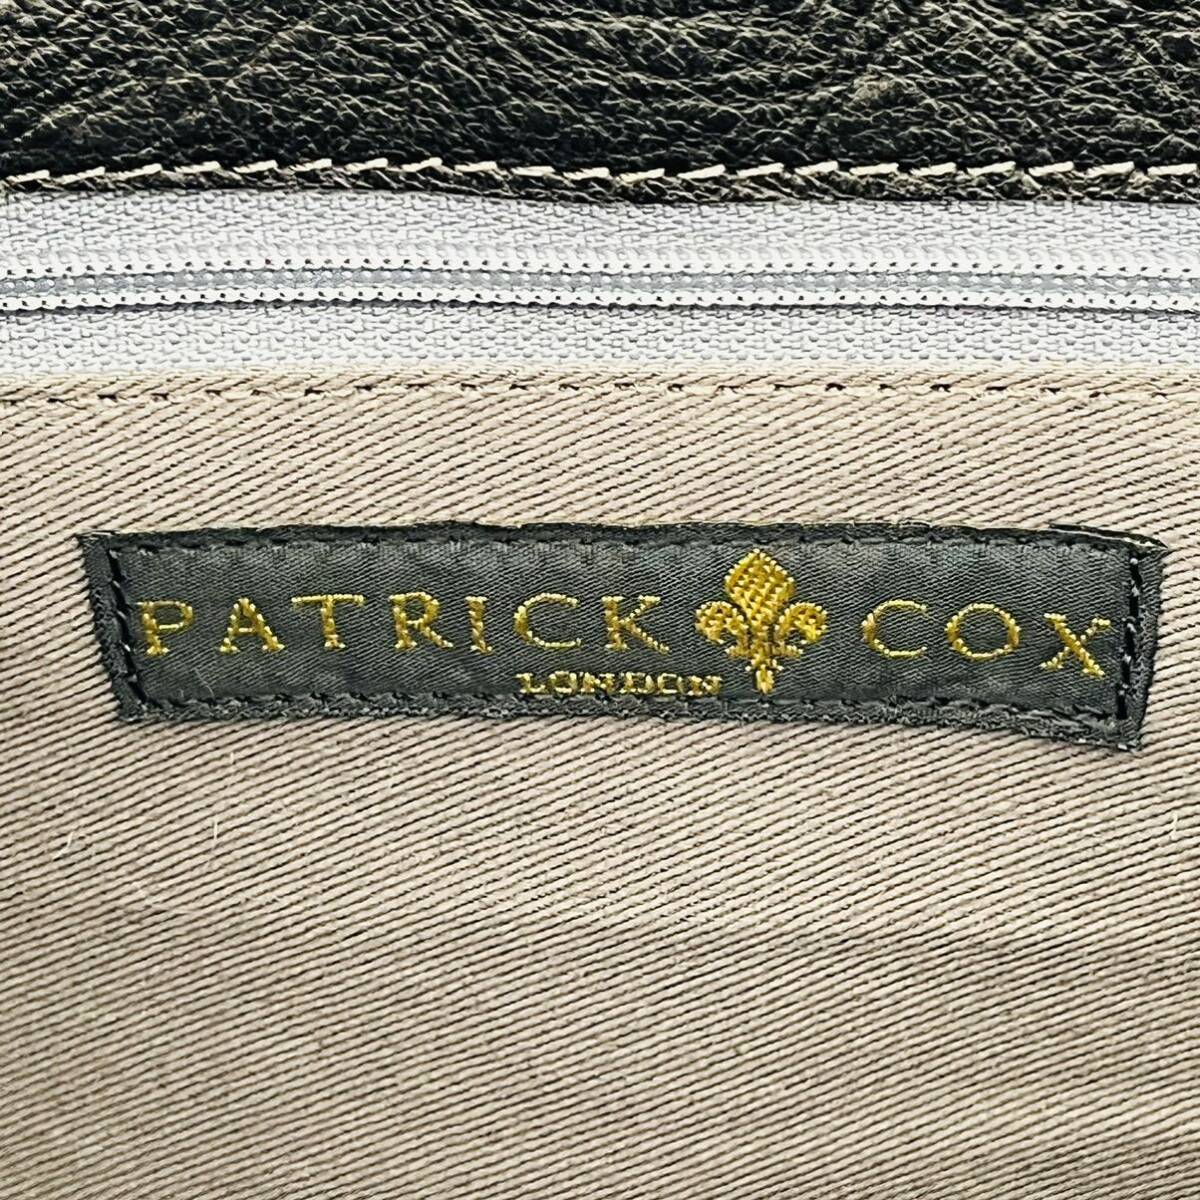 CD736cc PATRICK COX(パトリック・コックス) ハンドバッグ トートバッグ 黒 ビジネス レディース ブラック ロンドン キャンバス生地の画像7